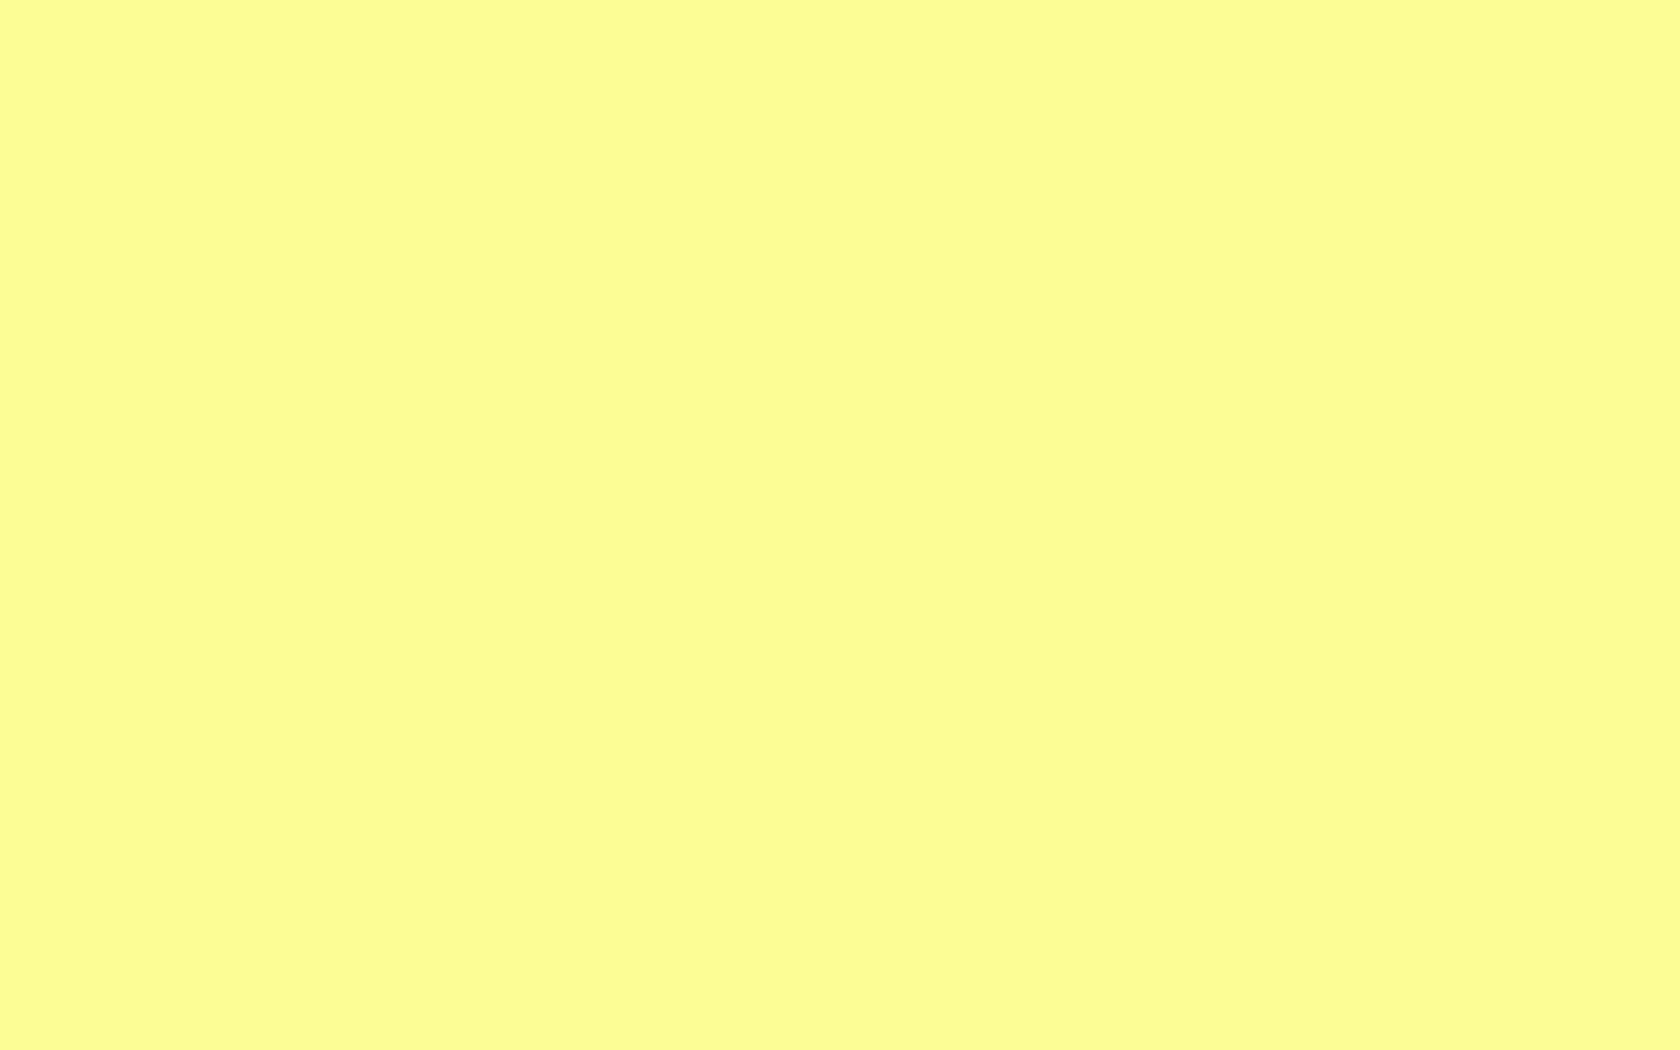 귀여운 텀블러 배경 화면,초록,노랑,주황색,갈색,본문